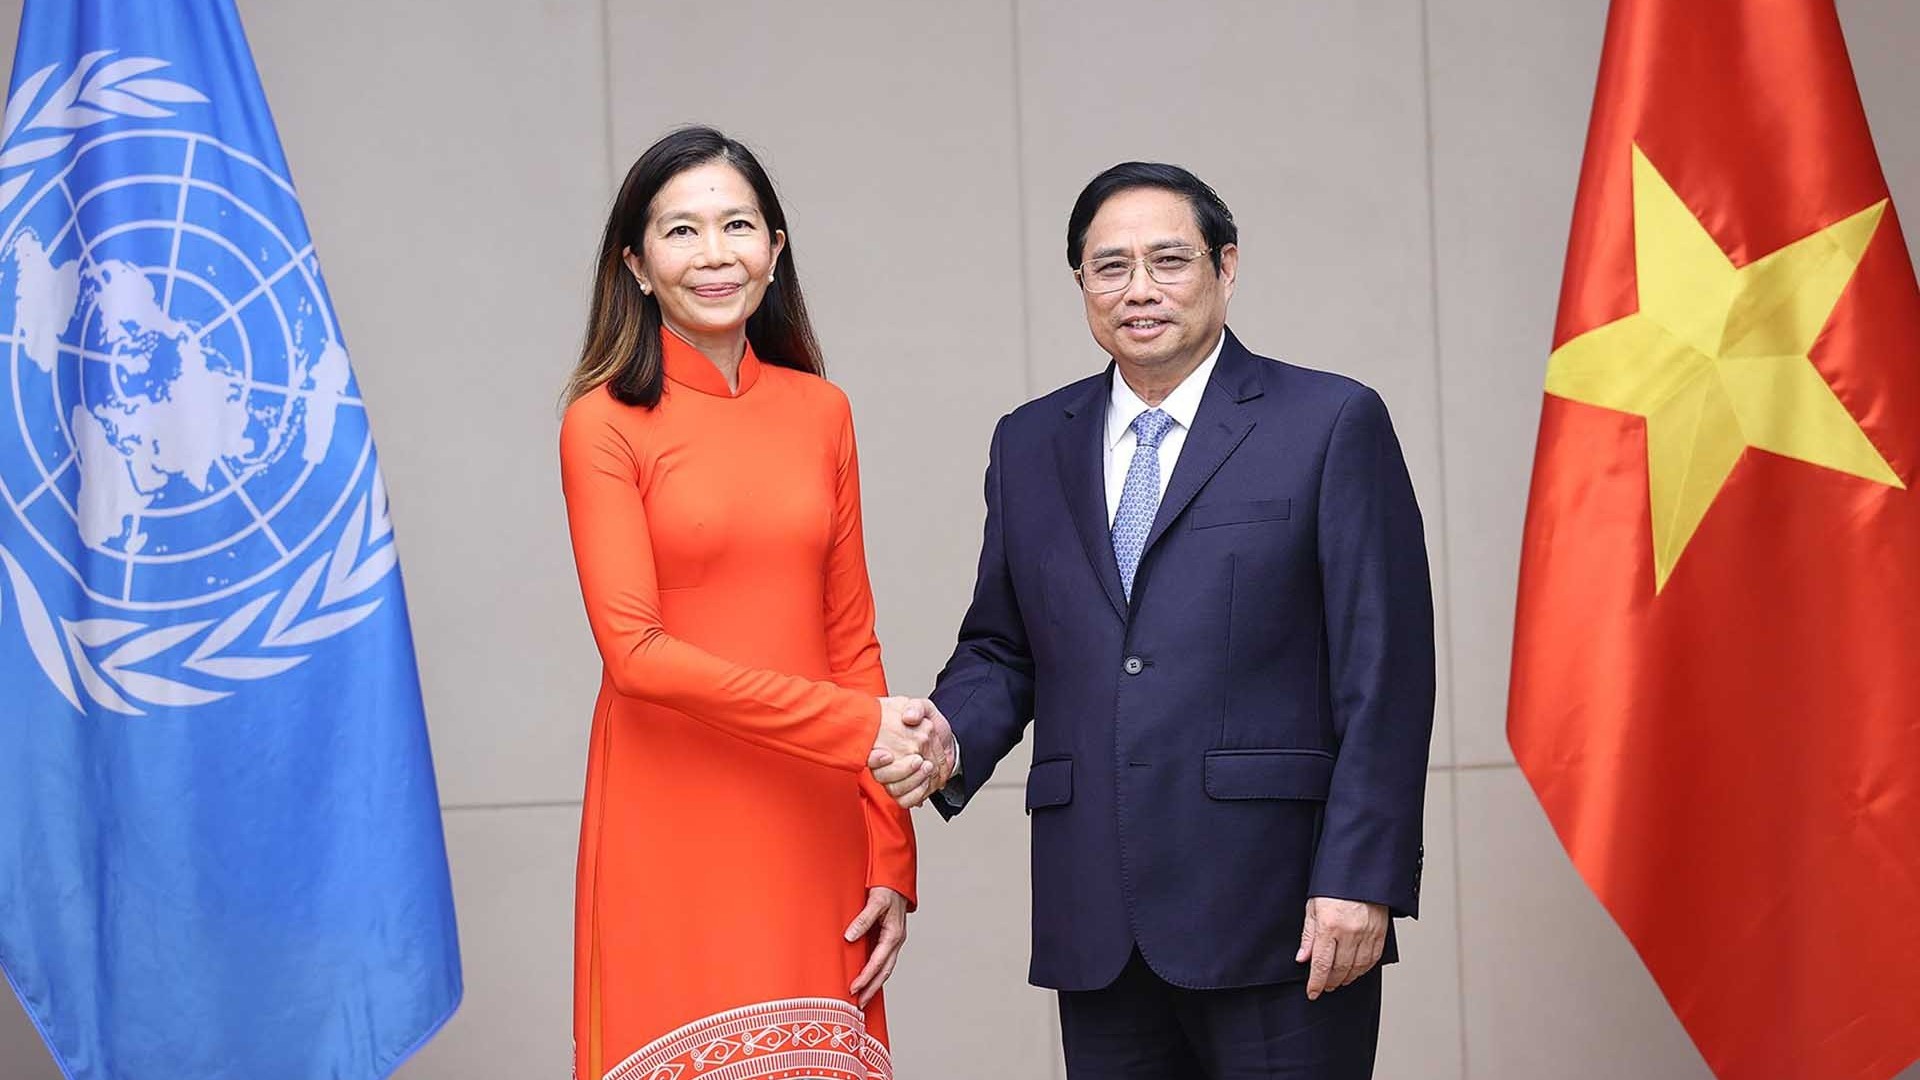 Thủ tướng Phạm Minh Chính tiếp Điều phối viên thường trú Liên hợp quốc tới trình Thư ủy nhiệm